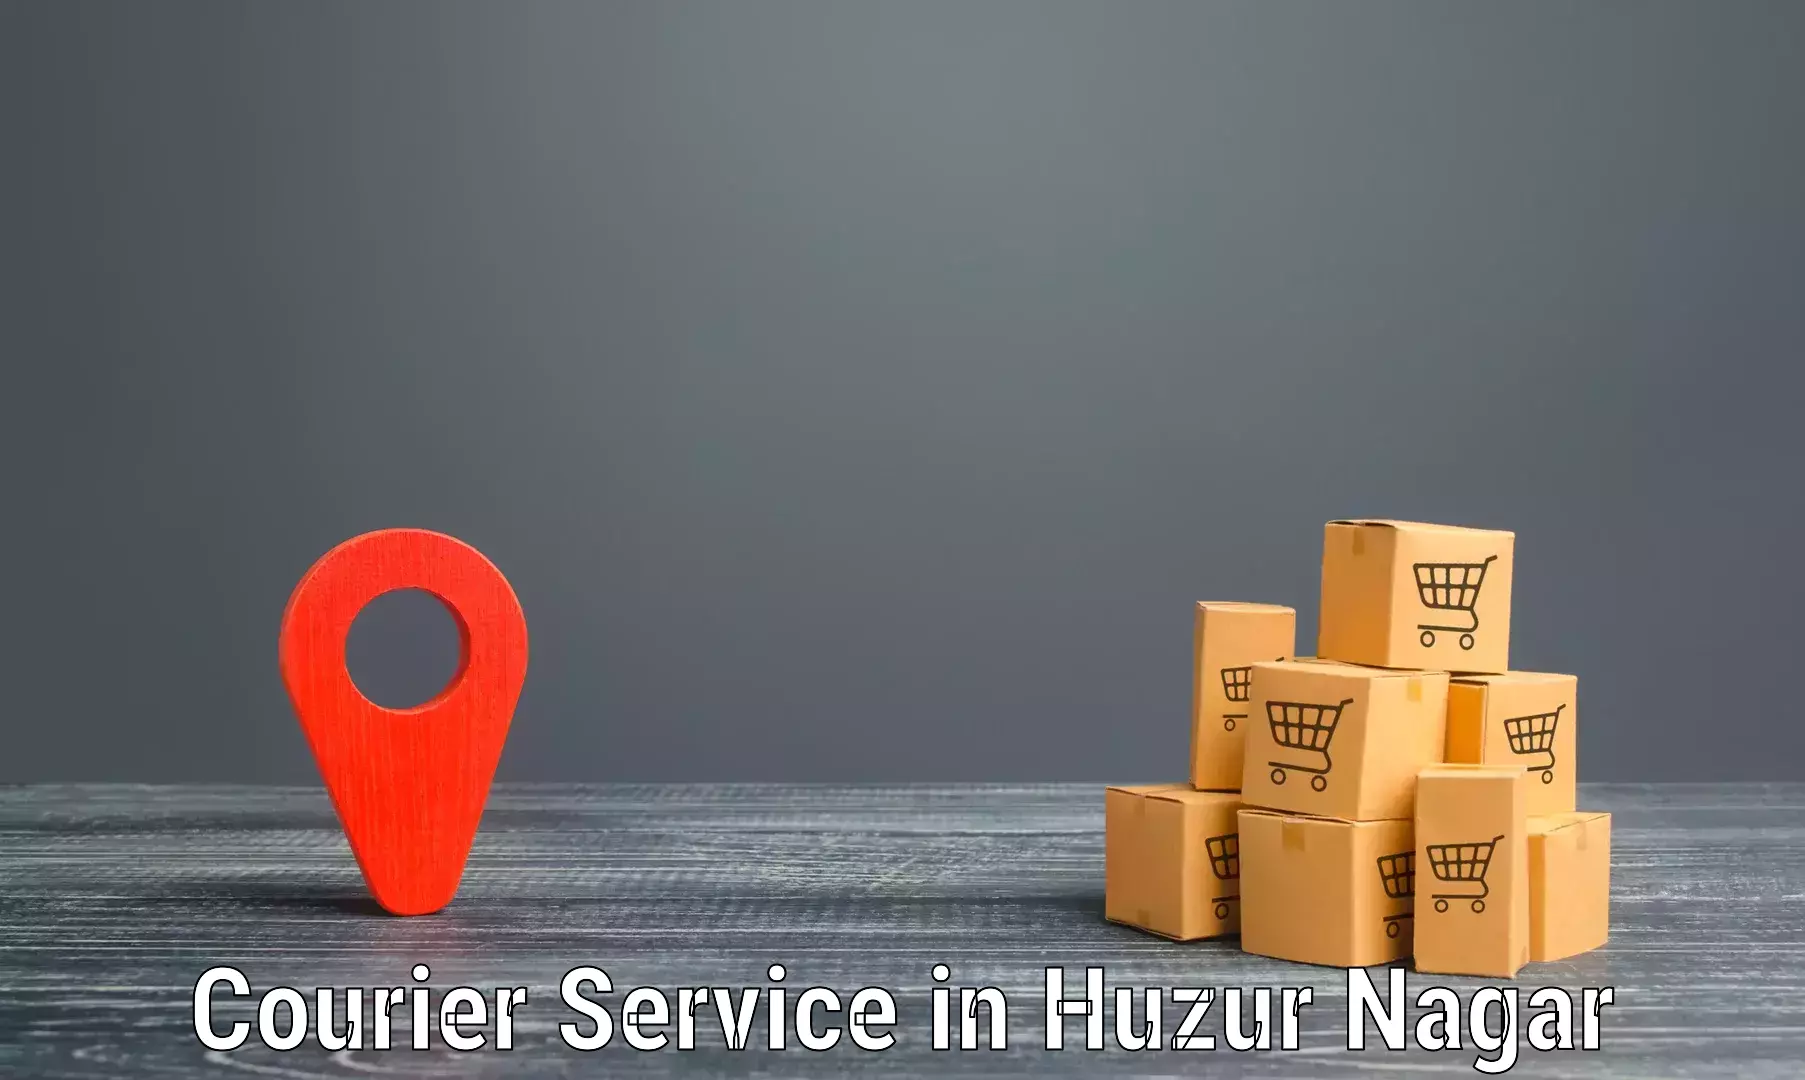 Comprehensive parcel tracking in Huzur Nagar